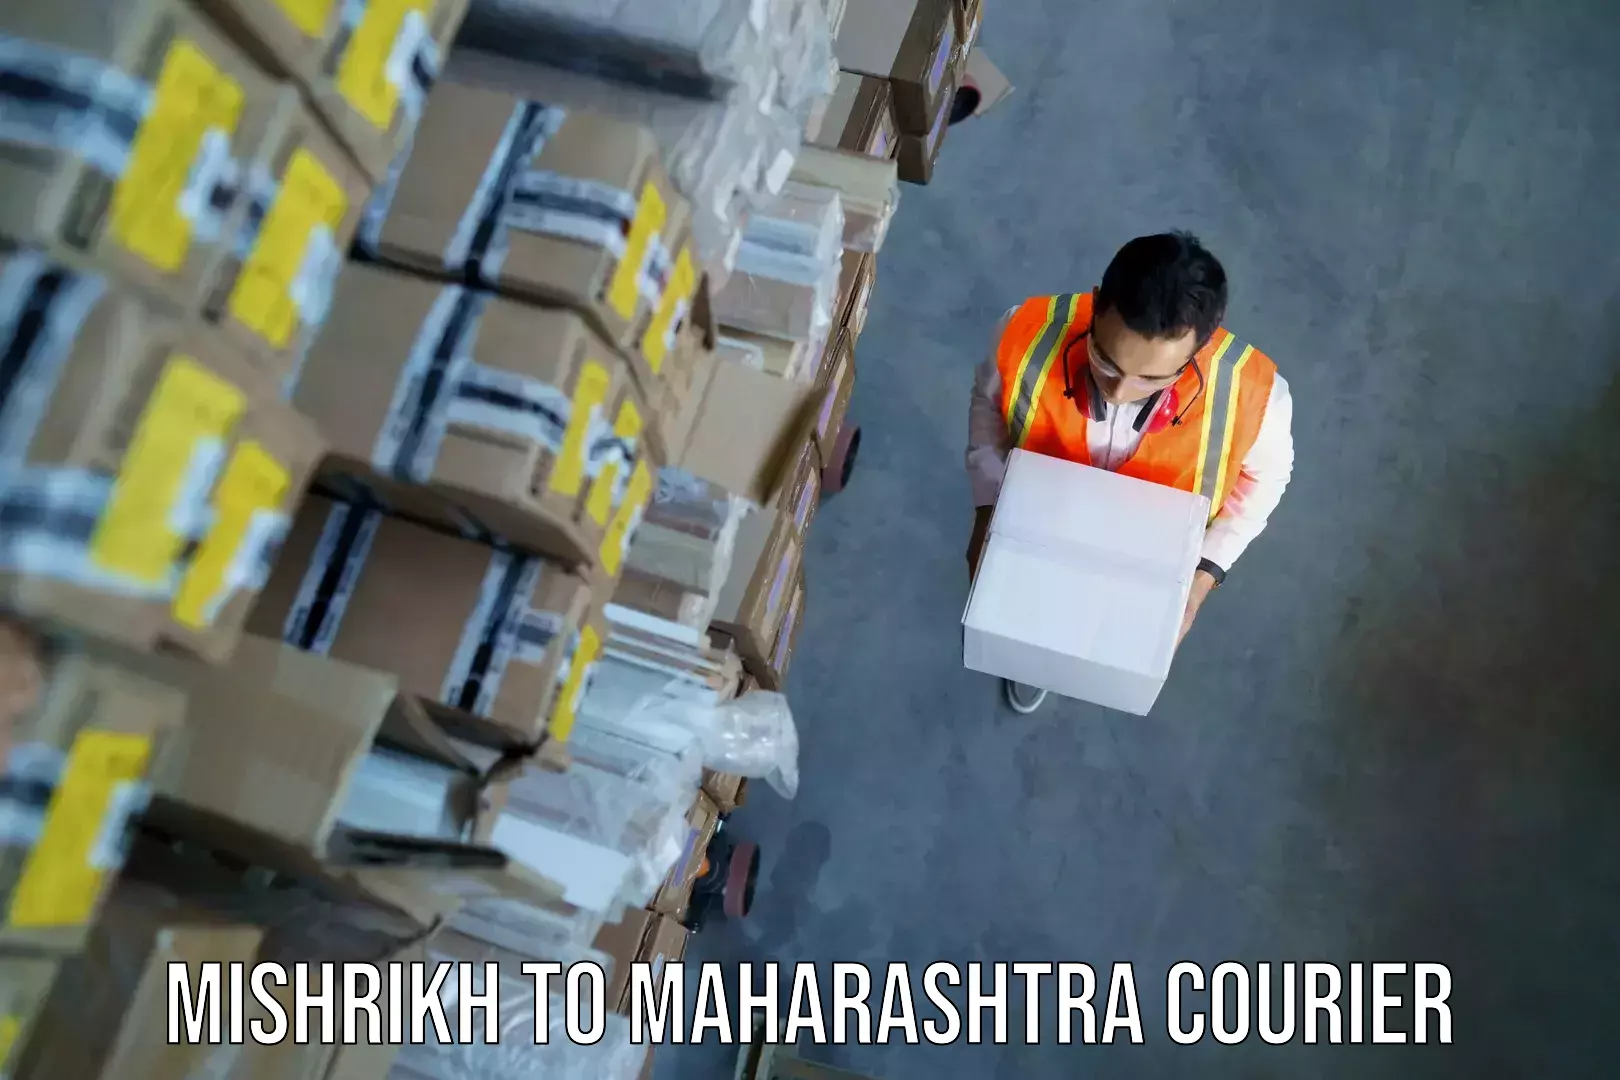 Luggage transit service Mishrikh to Maharashtra